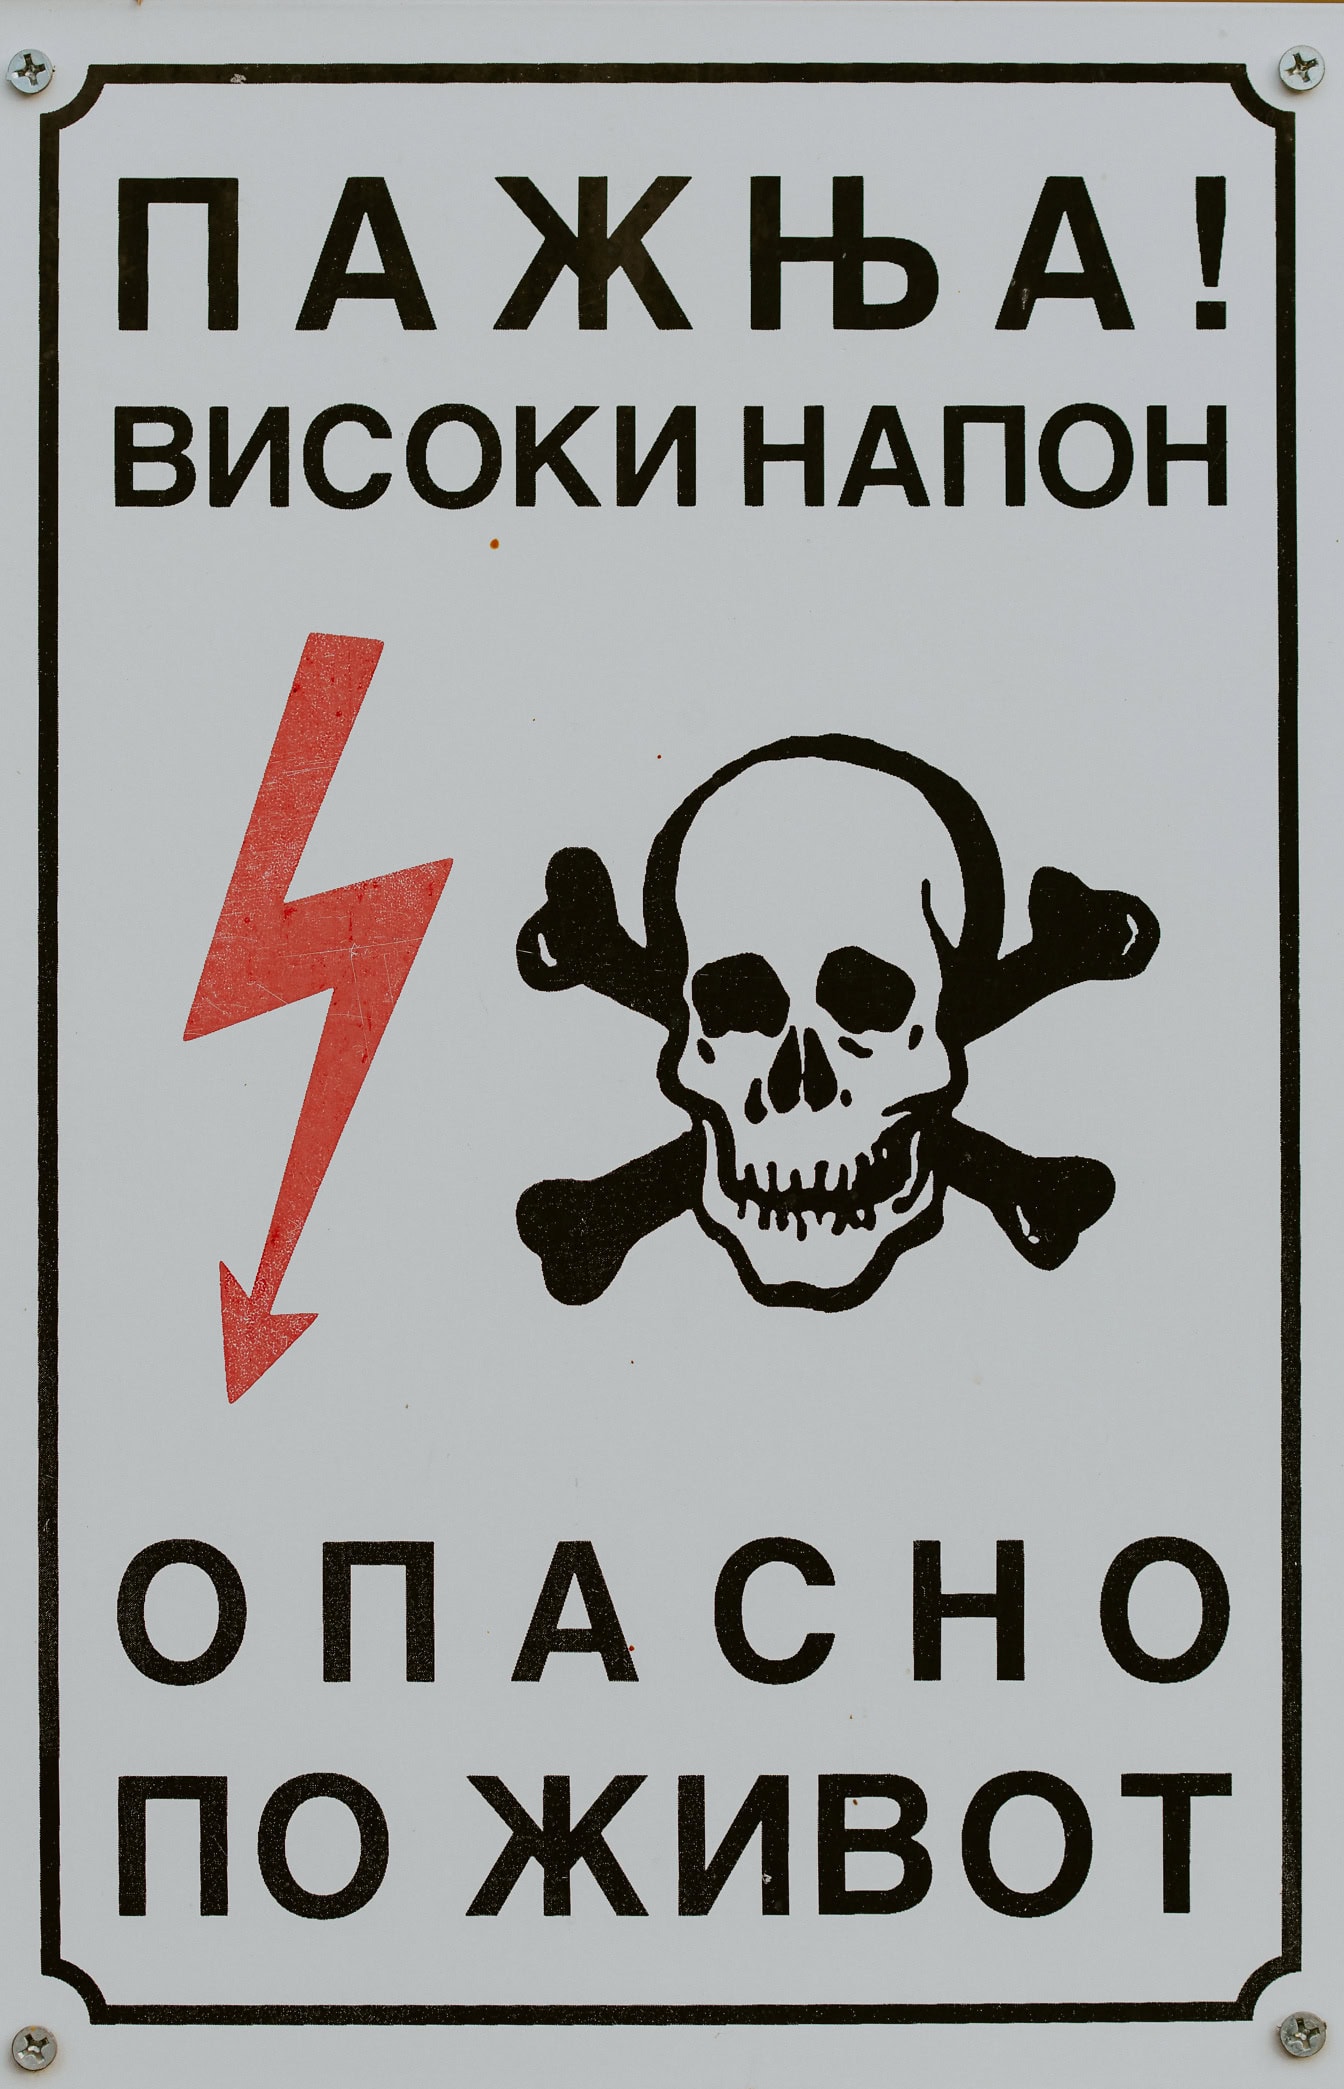 Kafatası, çapraz kemikler ve şimşek ve yüksek elektrik voltajı yazıtlı Kiril harfleri ile uyarı işareti